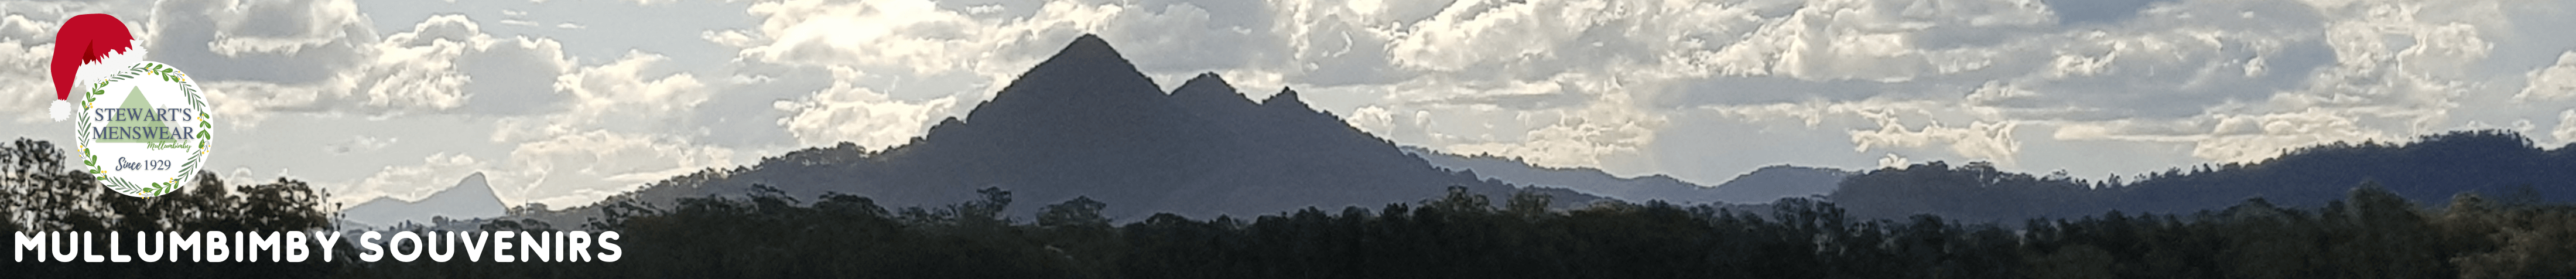 Stewarts Menswear Mullumbimby. Mullumbimby Souvenirs. A photo of Mt Chincogan, an iconic mountain in Mullumbimby